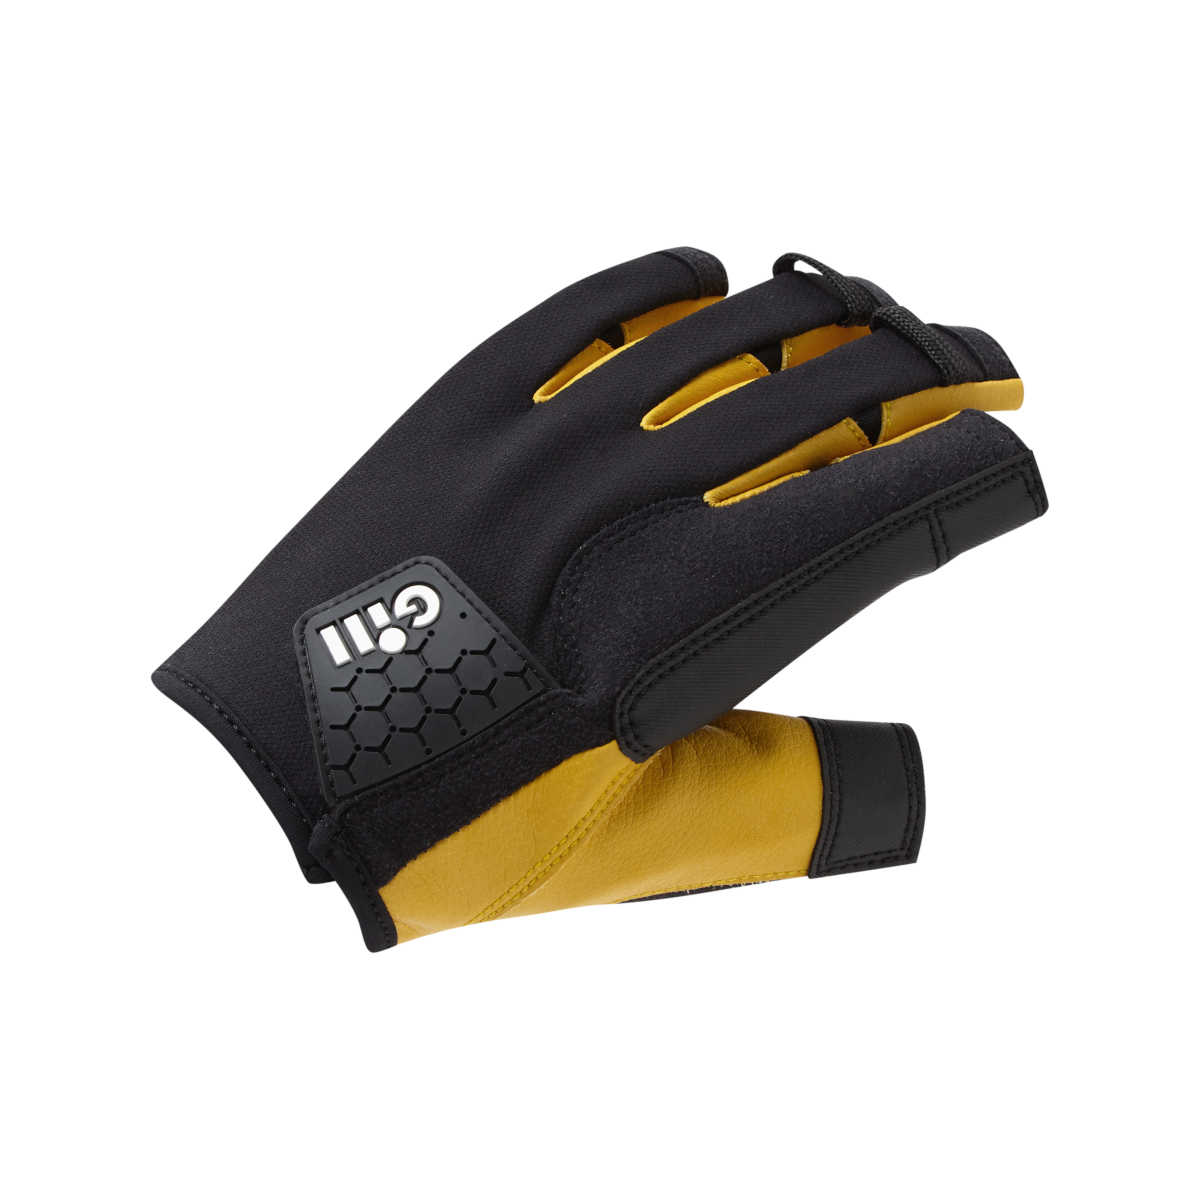 Gill Pro gants de voile à doigts courts - noir, taille XL